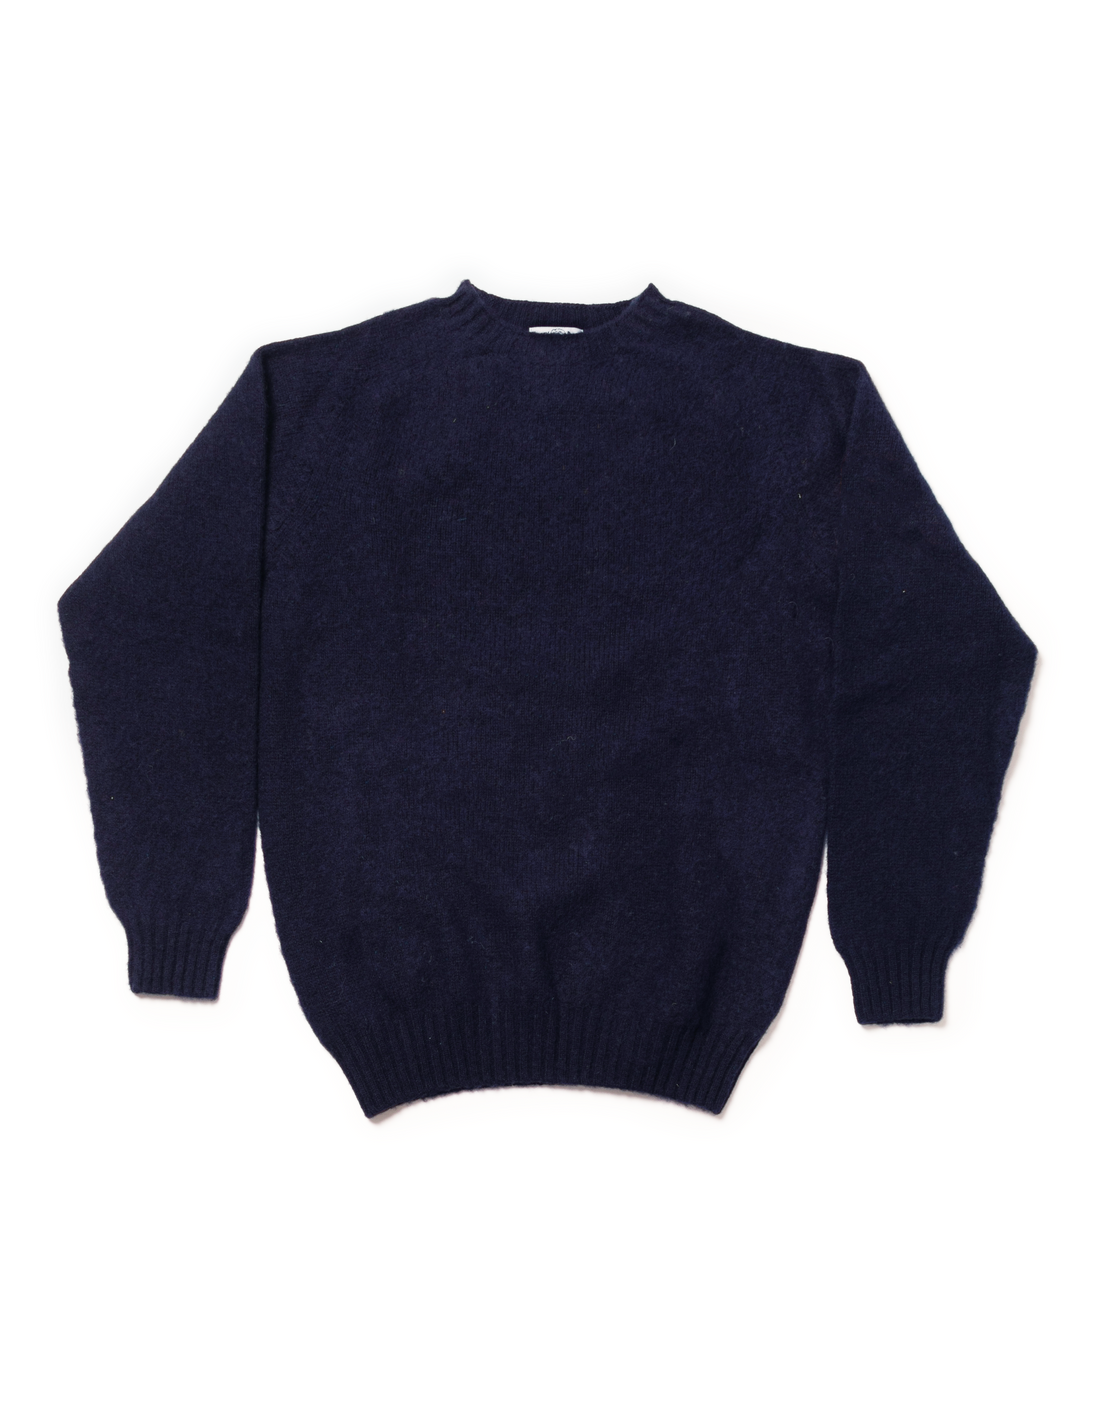 Shaggy Dog Sweater Navy - Trim Fit | J.PRESS - Pennant Label – J. PRESS